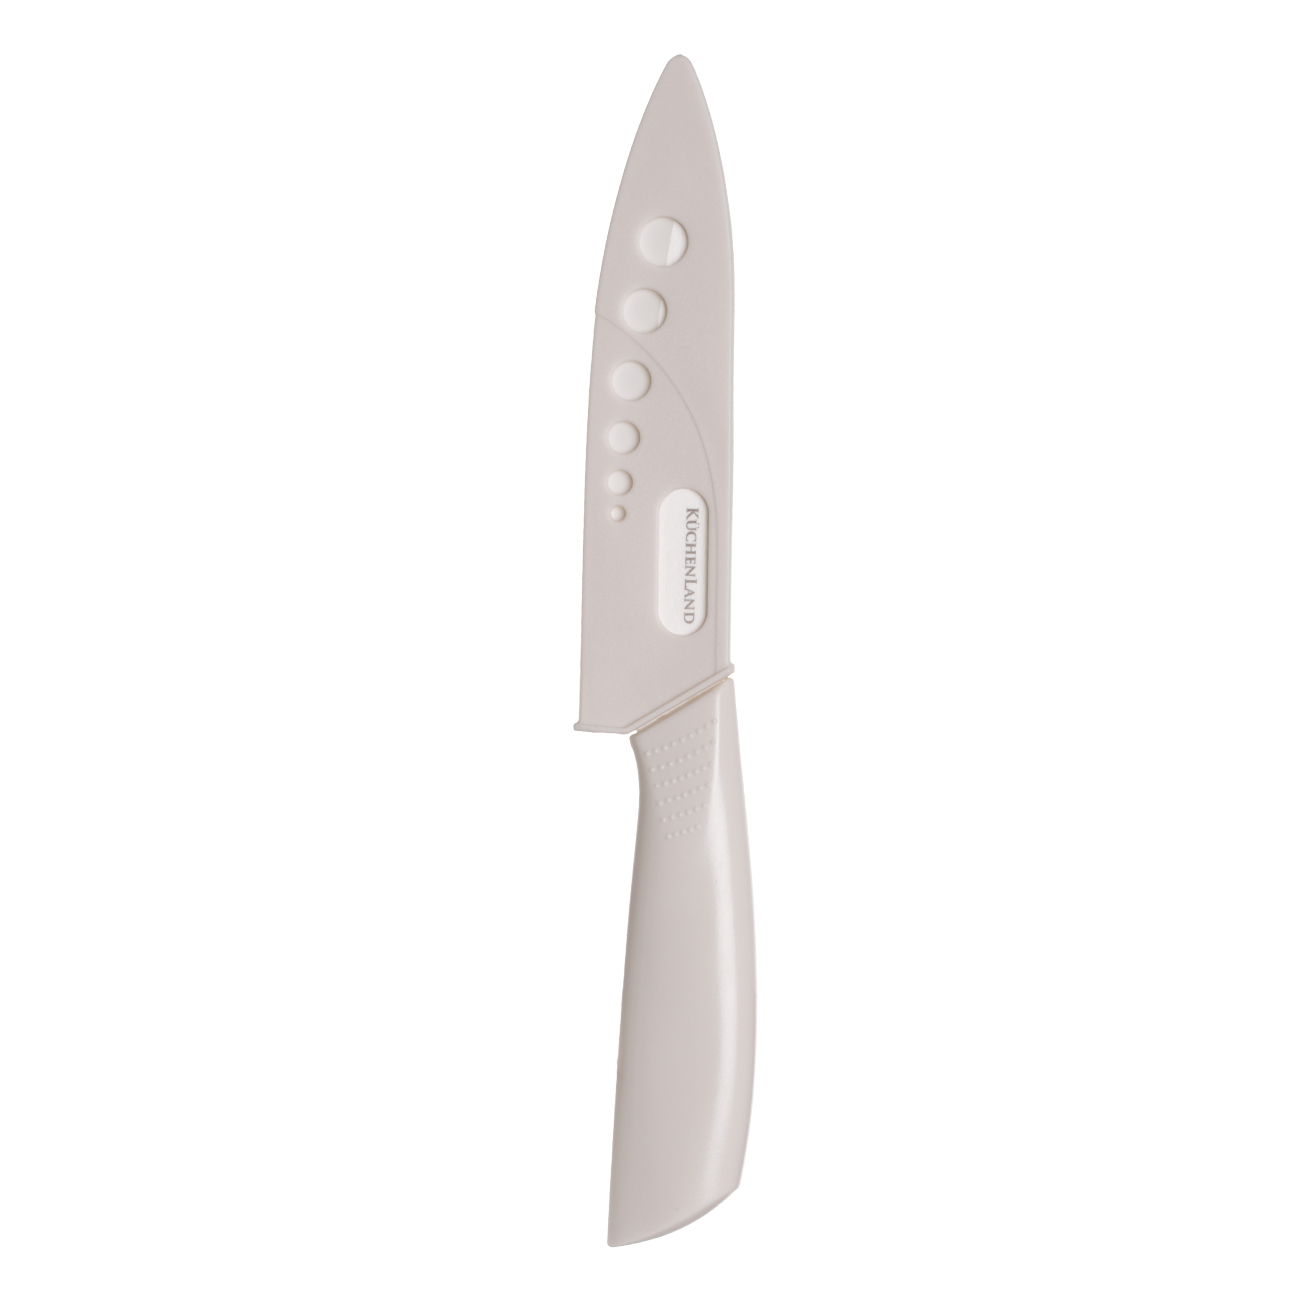 Нож для нарезки, 13 см, с чехлом, керамика/пластик, молочный, Regular изображение № 3